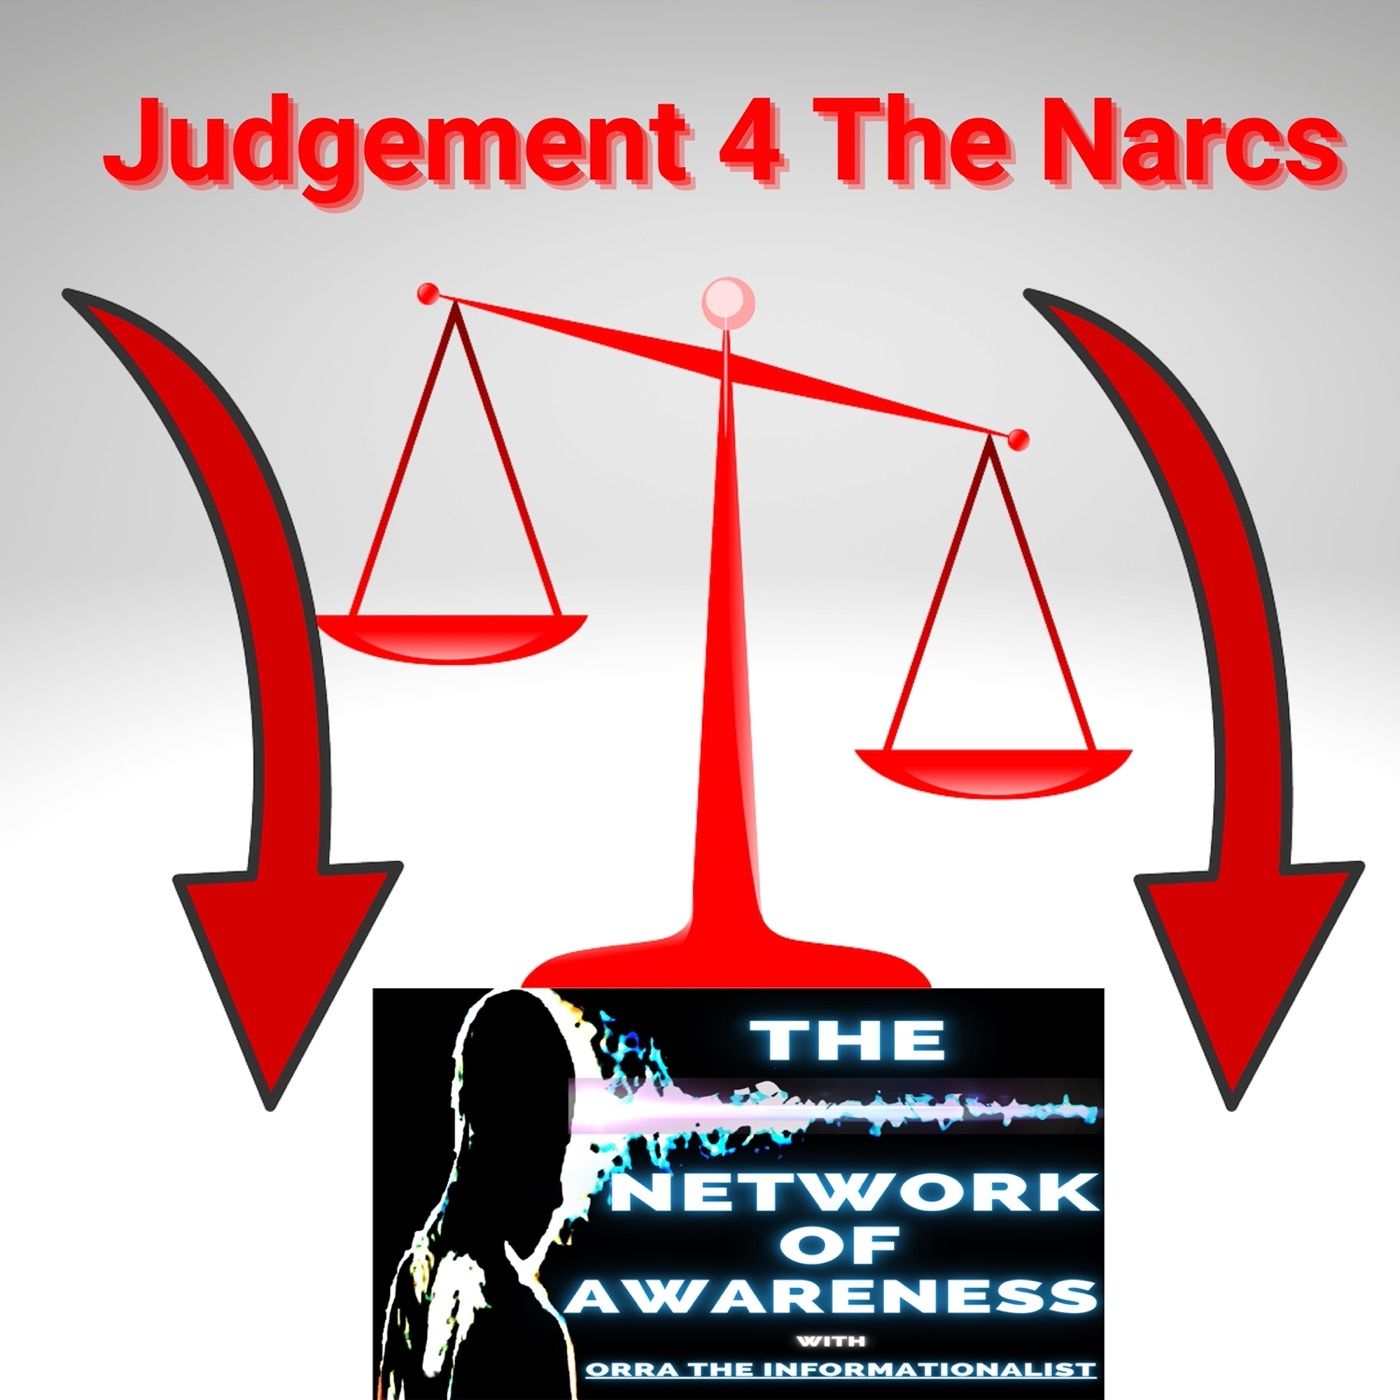 Judgement 4 The Narcs